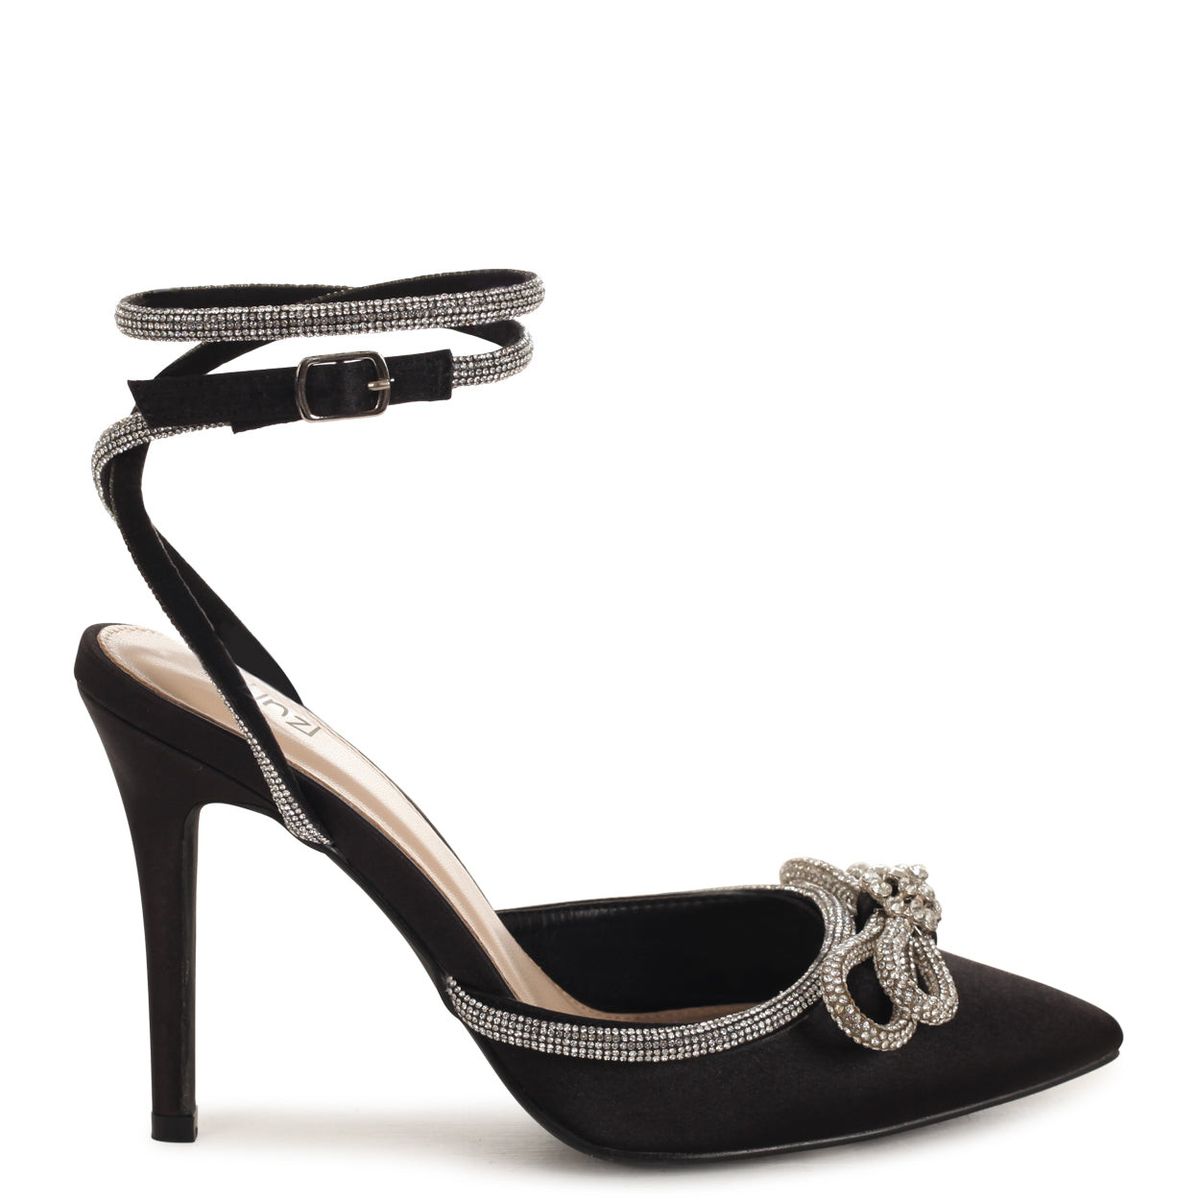 Linzi Ladies Azure Classic Court Heels - Black Satin | Shop Today. Get ...